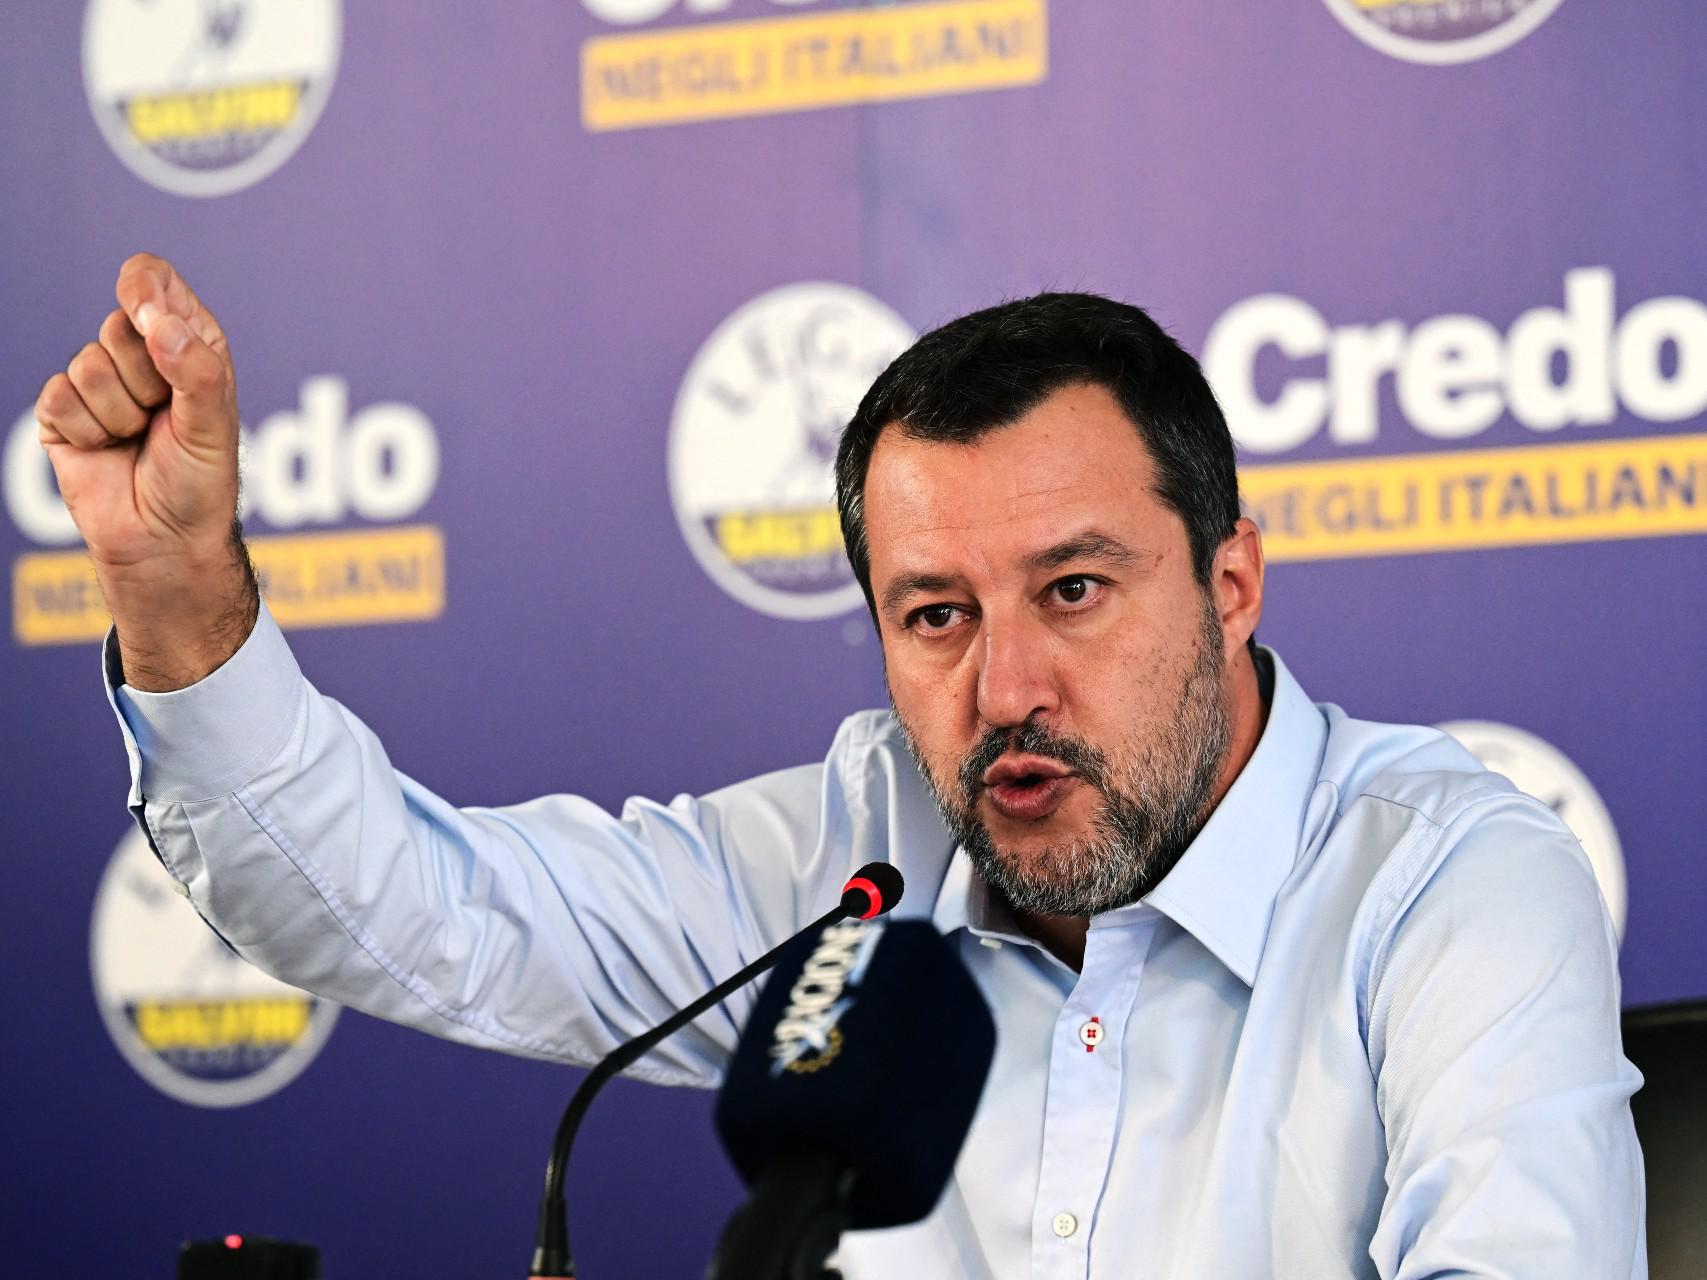 Governo, Salvini: "Centrodestra unito, bloccare sbarchi tra nostre priorità"